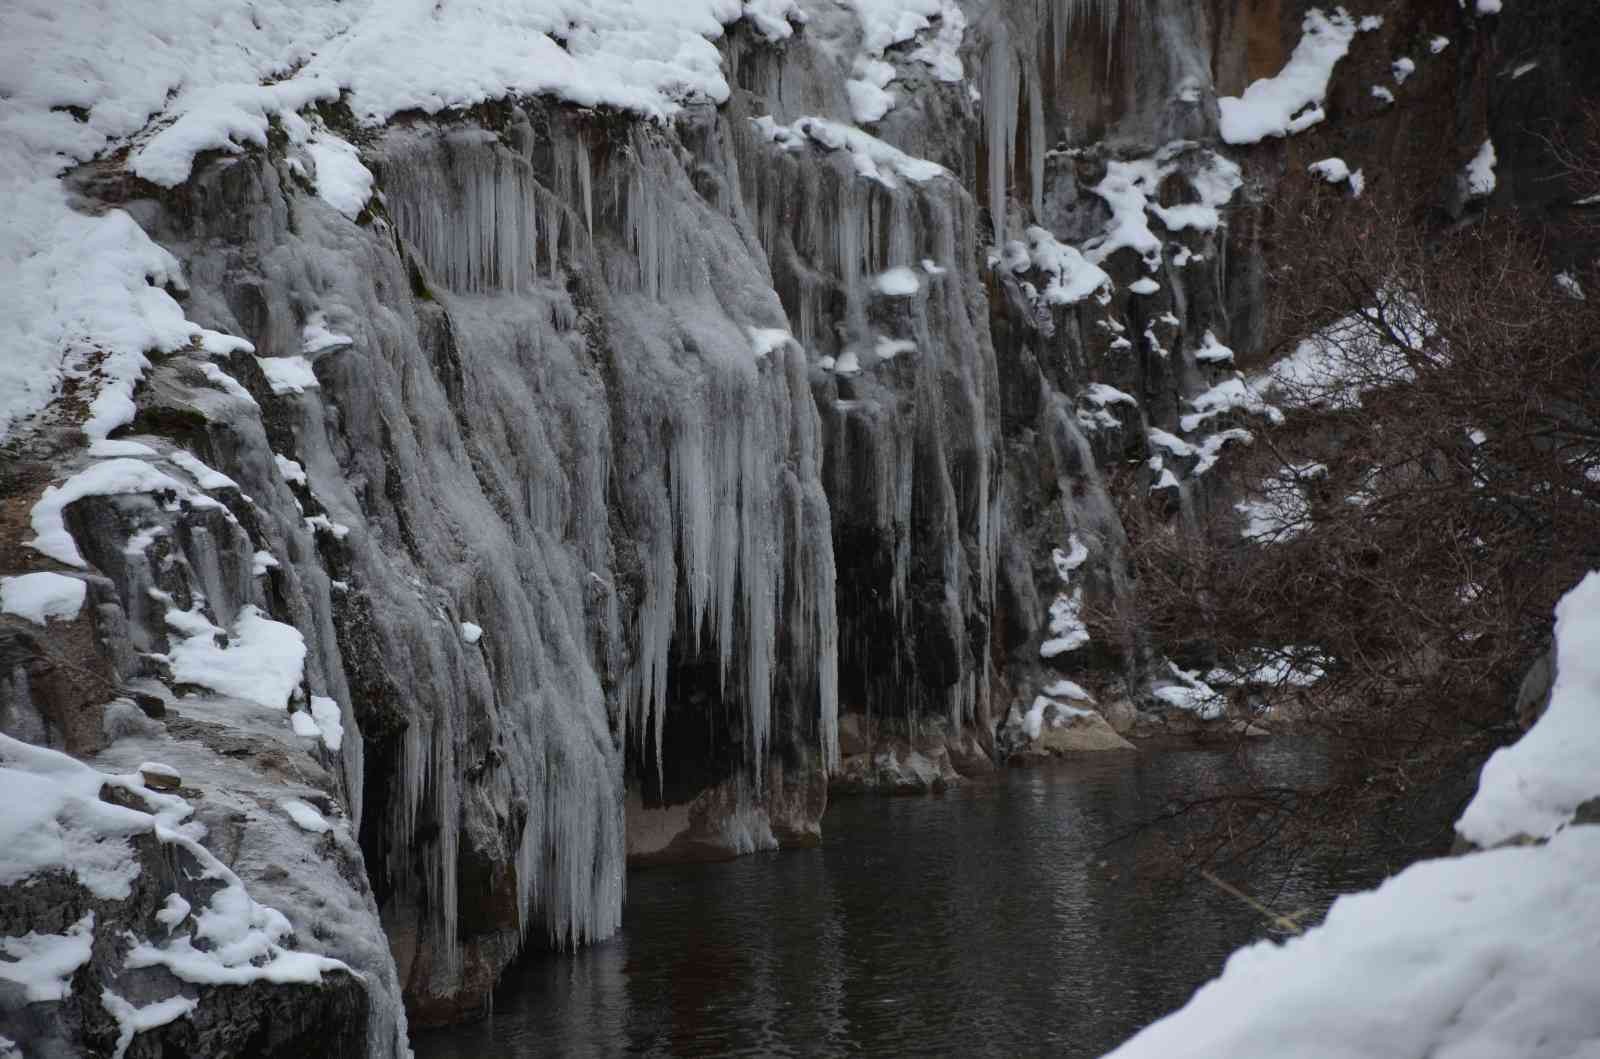 Eksi 20 dereceyi gören Şırnak’ta dev buz sarkıtları oluştu